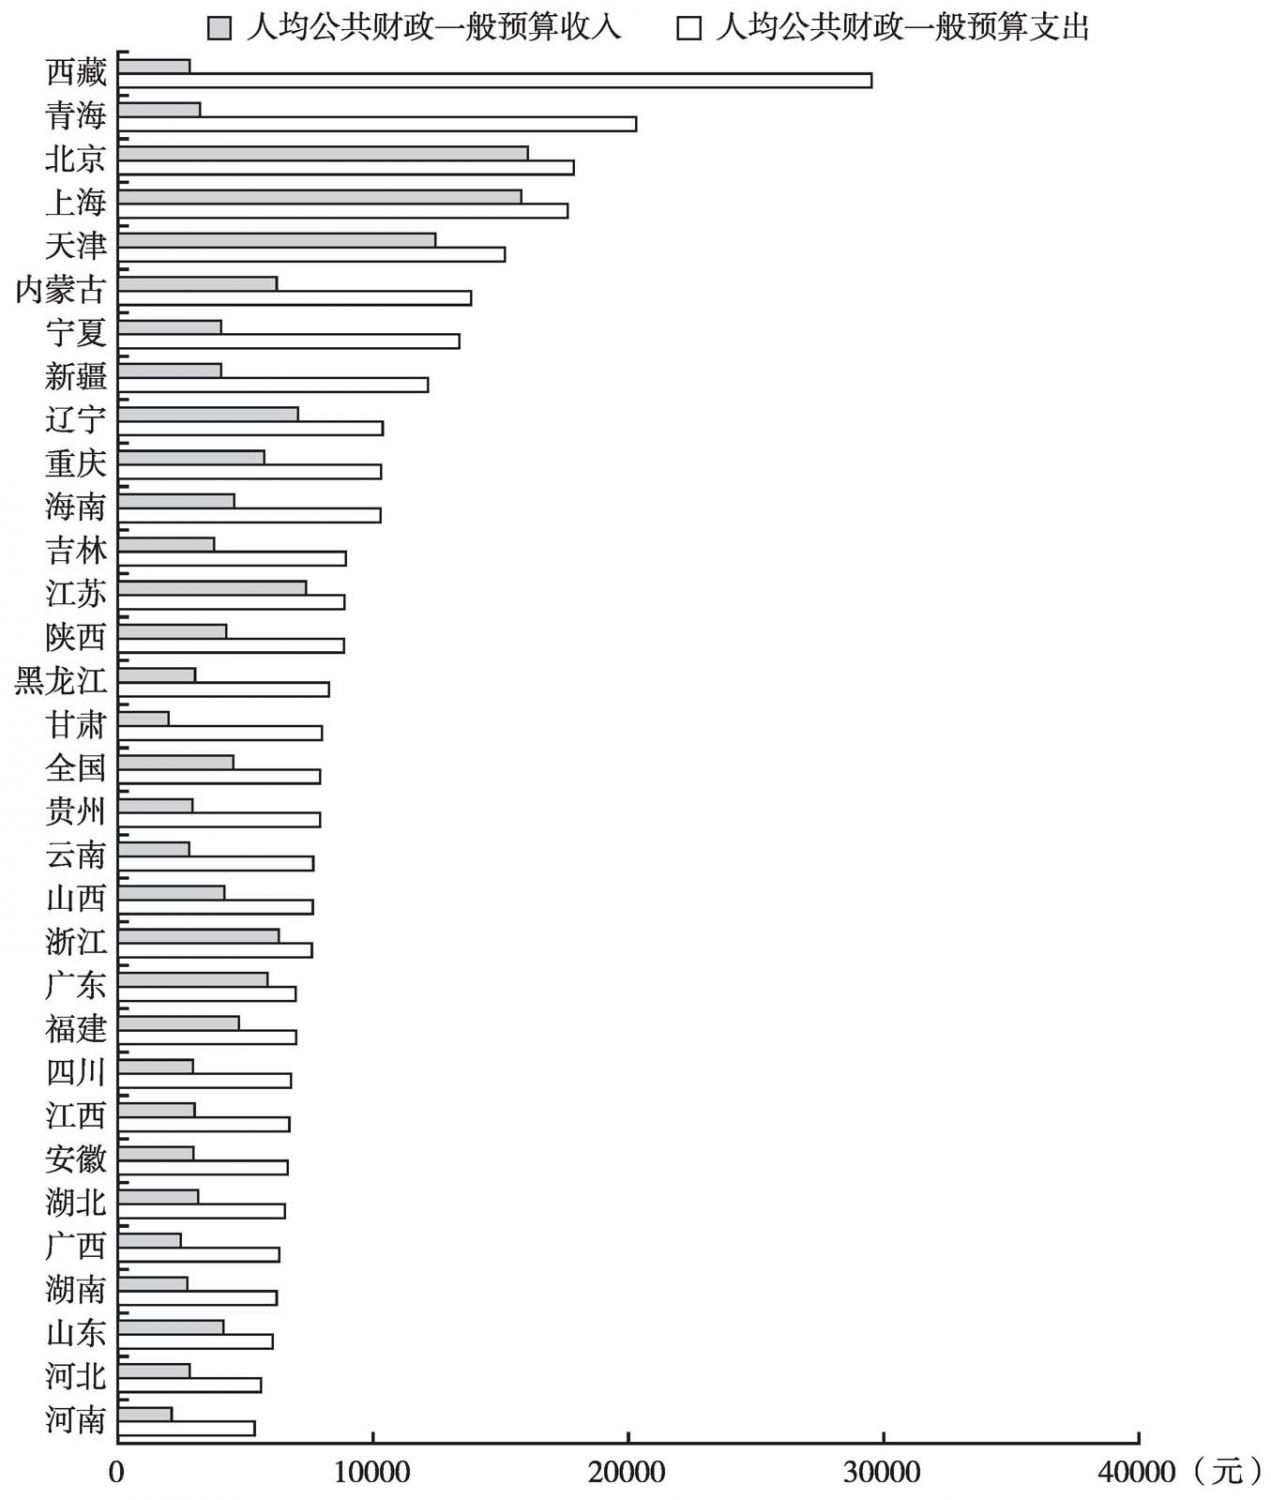 图14 2012年全国各地区人均财政收支状况